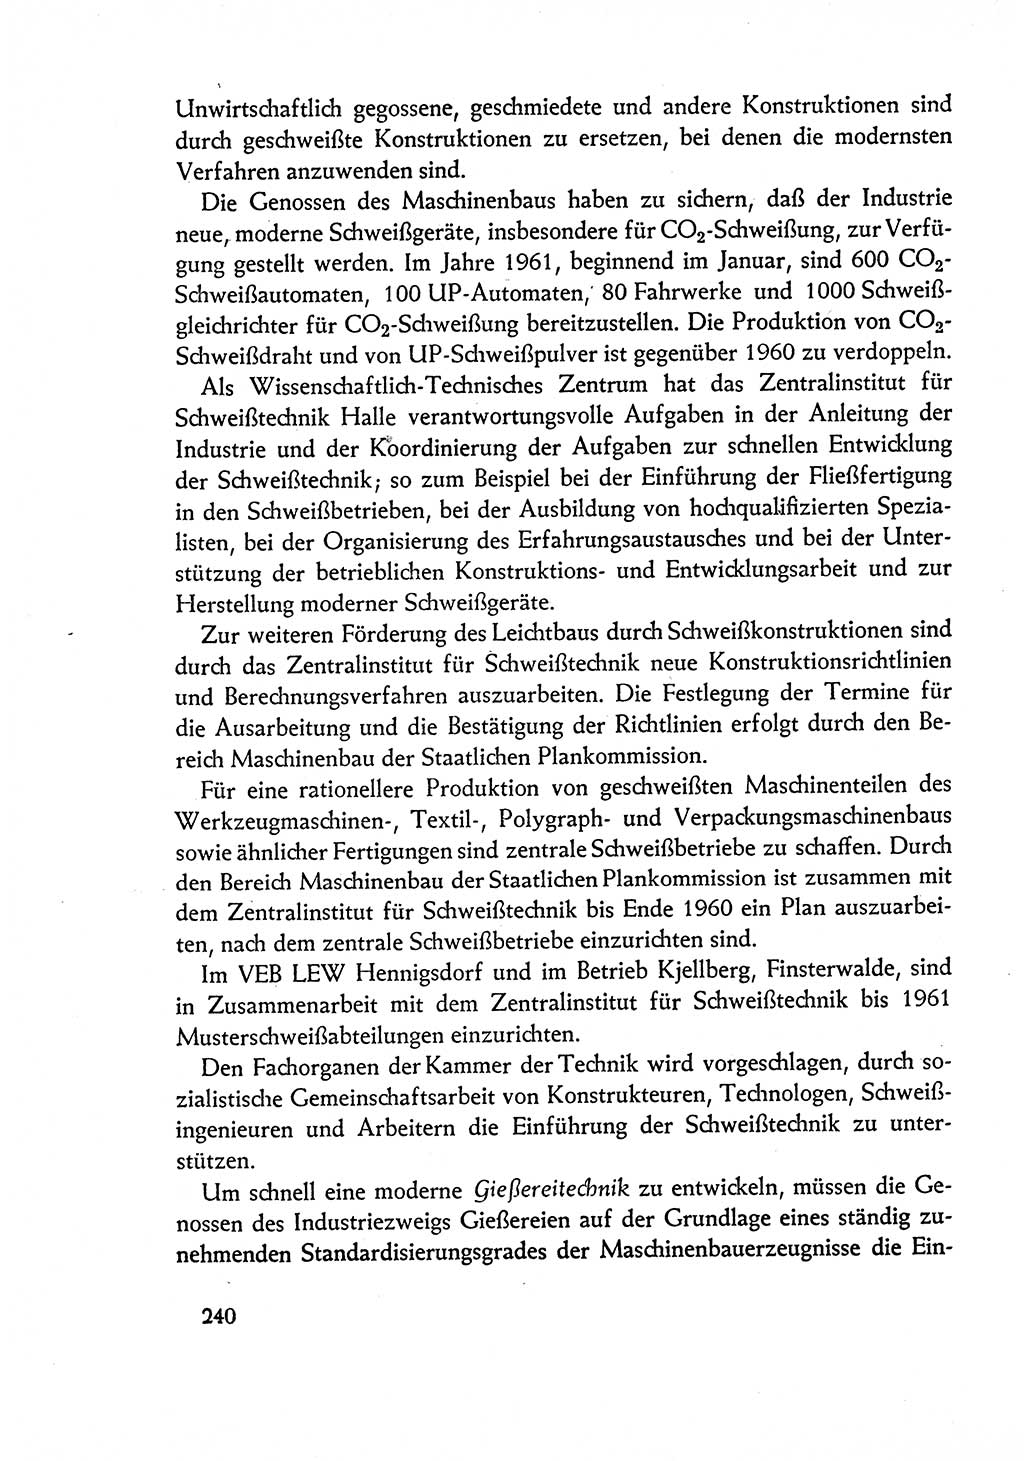 Dokumente der Sozialistischen Einheitspartei Deutschlands (SED) [Deutsche Demokratische Republik (DDR)] 1960-1961, Seite 240 (Dok. SED DDR 1960-1961, S. 240)